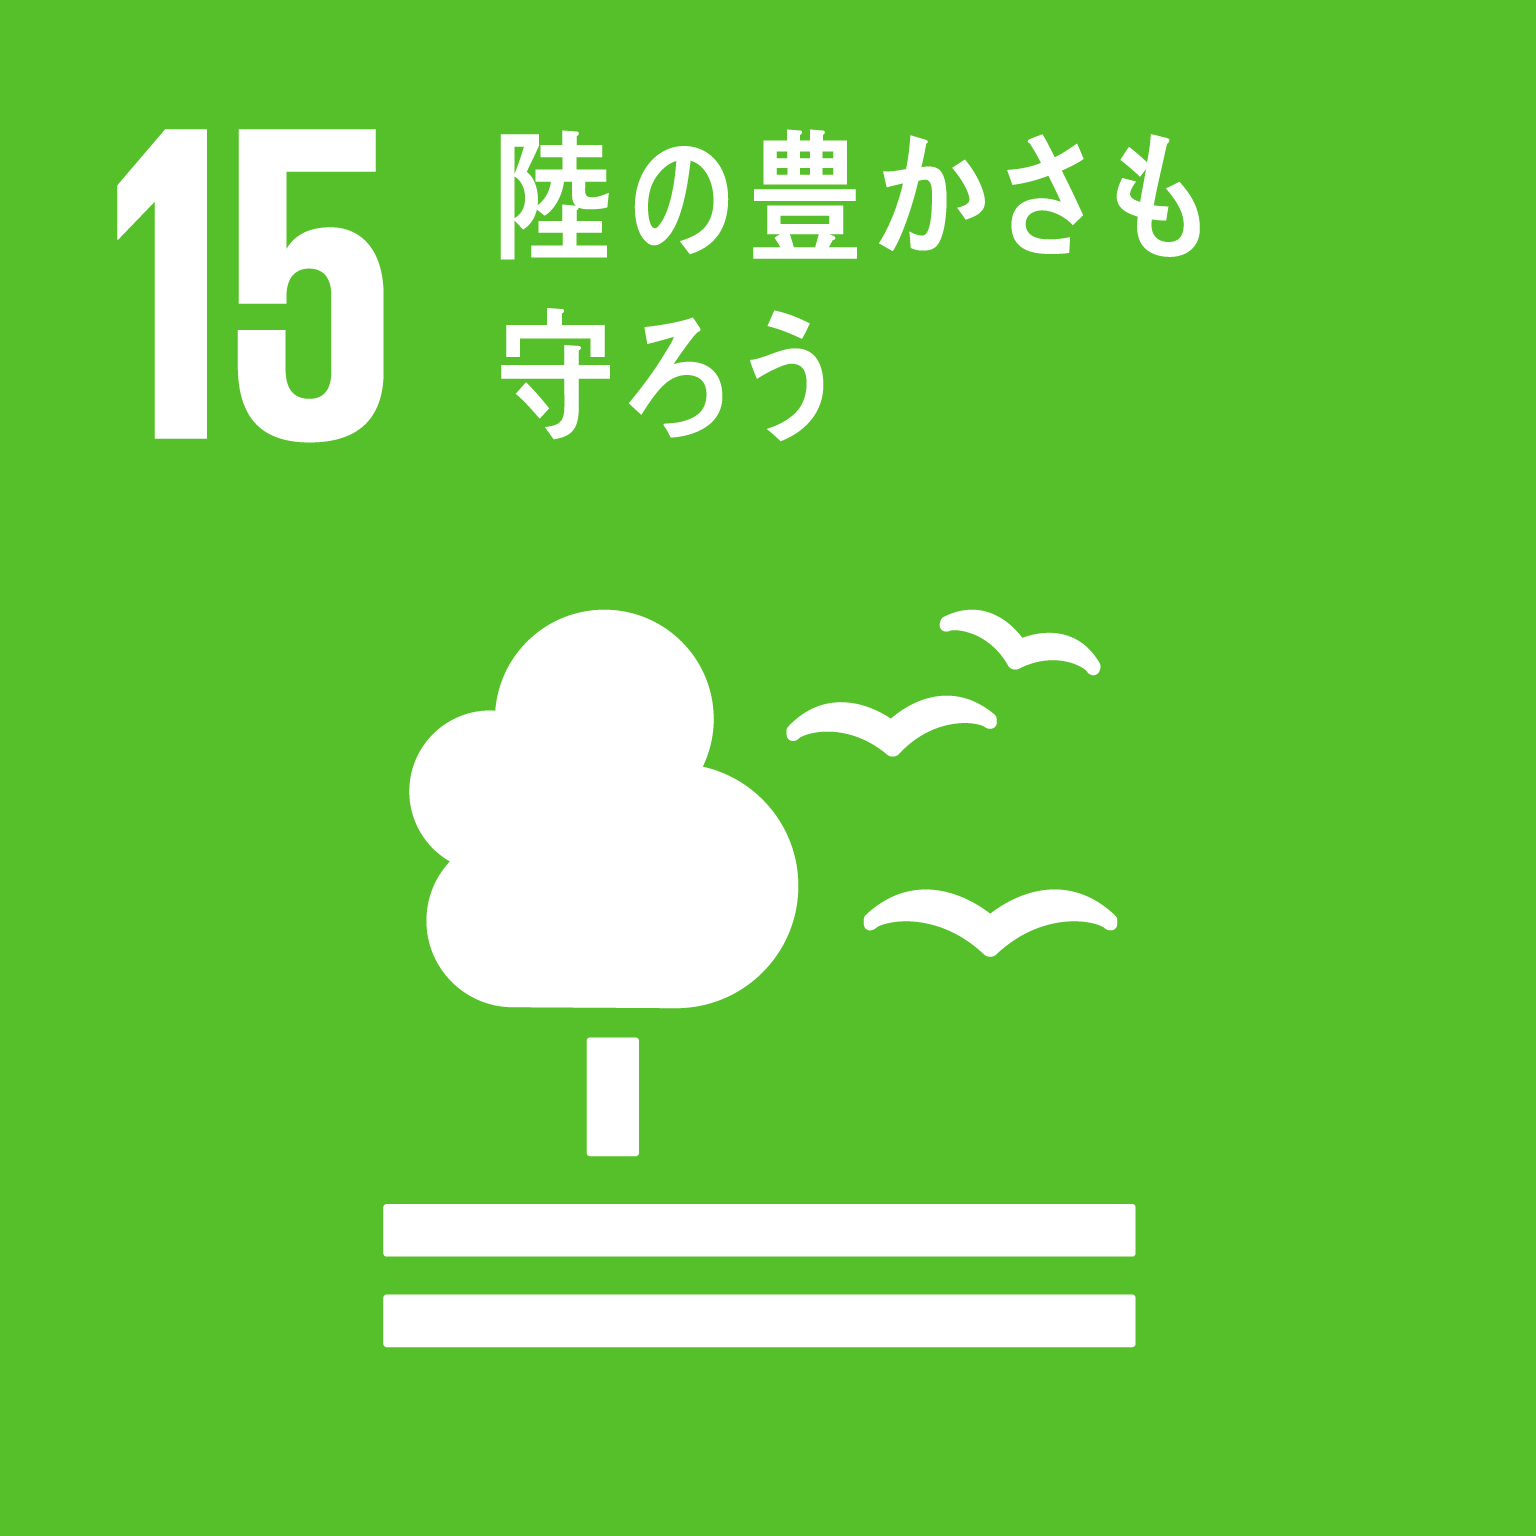 「15.陸の豊かさも守ろう」の文字と目標15のロゴ